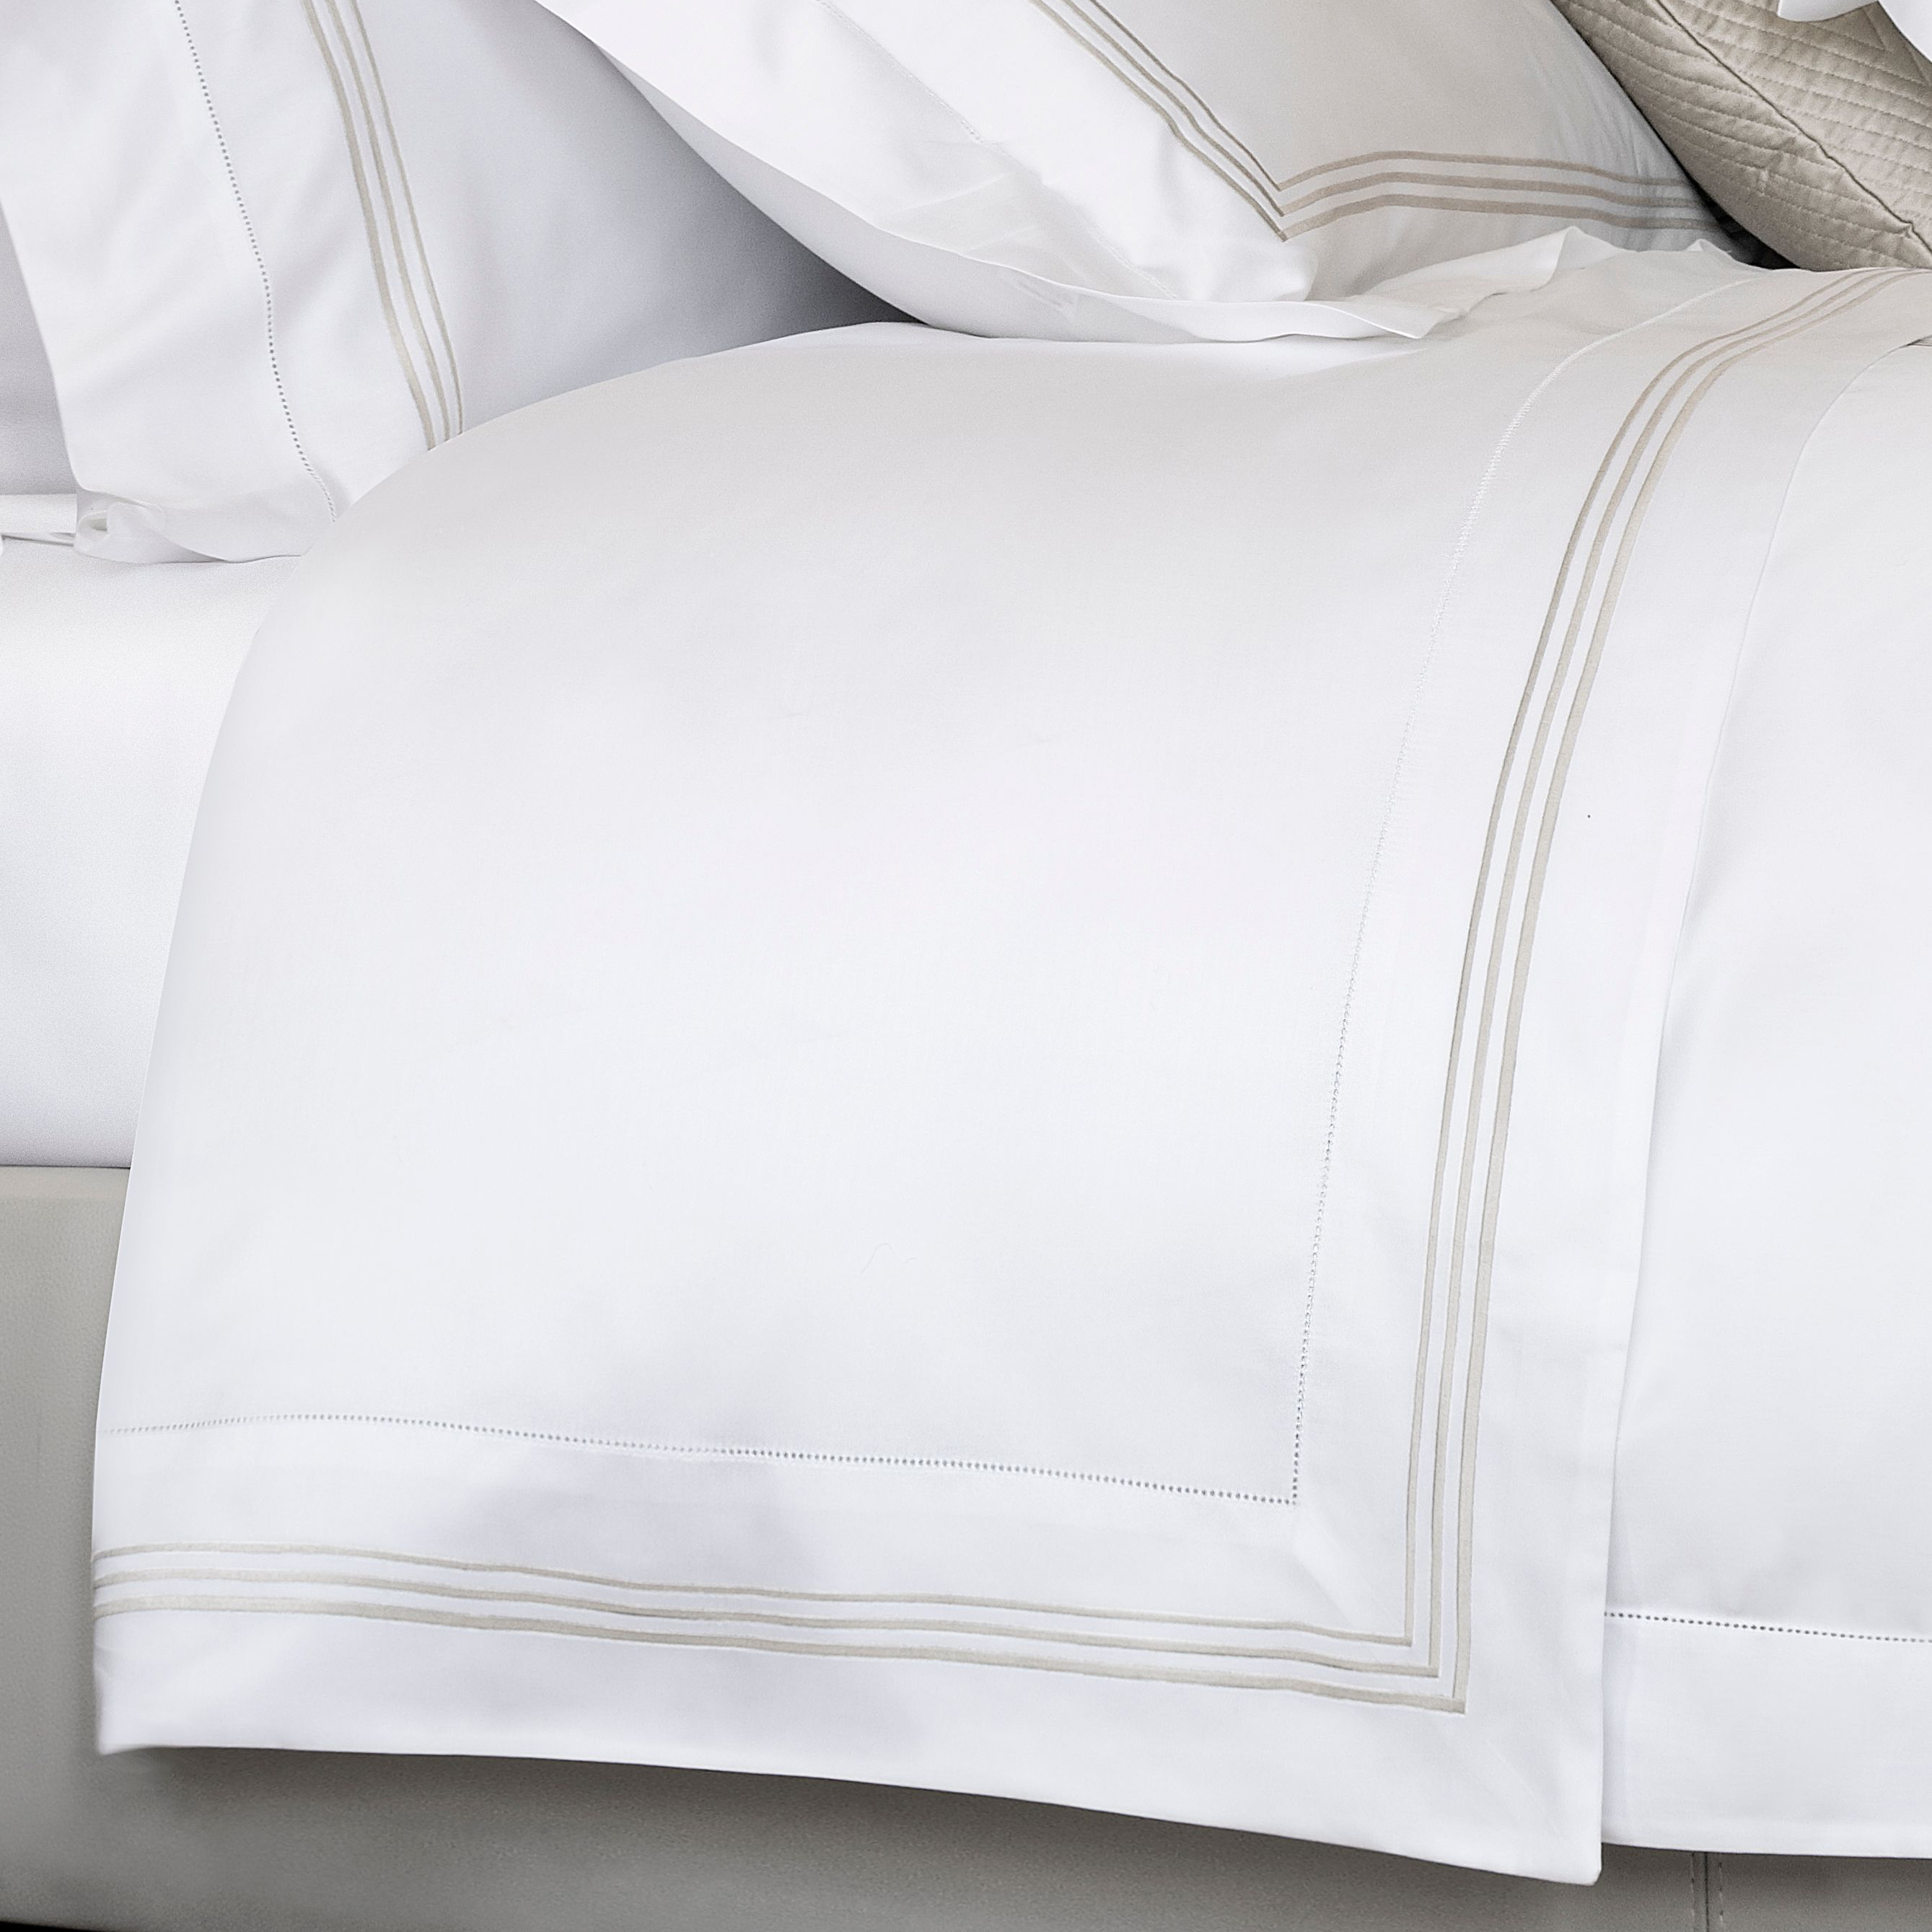 Nuvola Firm Down Alternative Pillow Filler